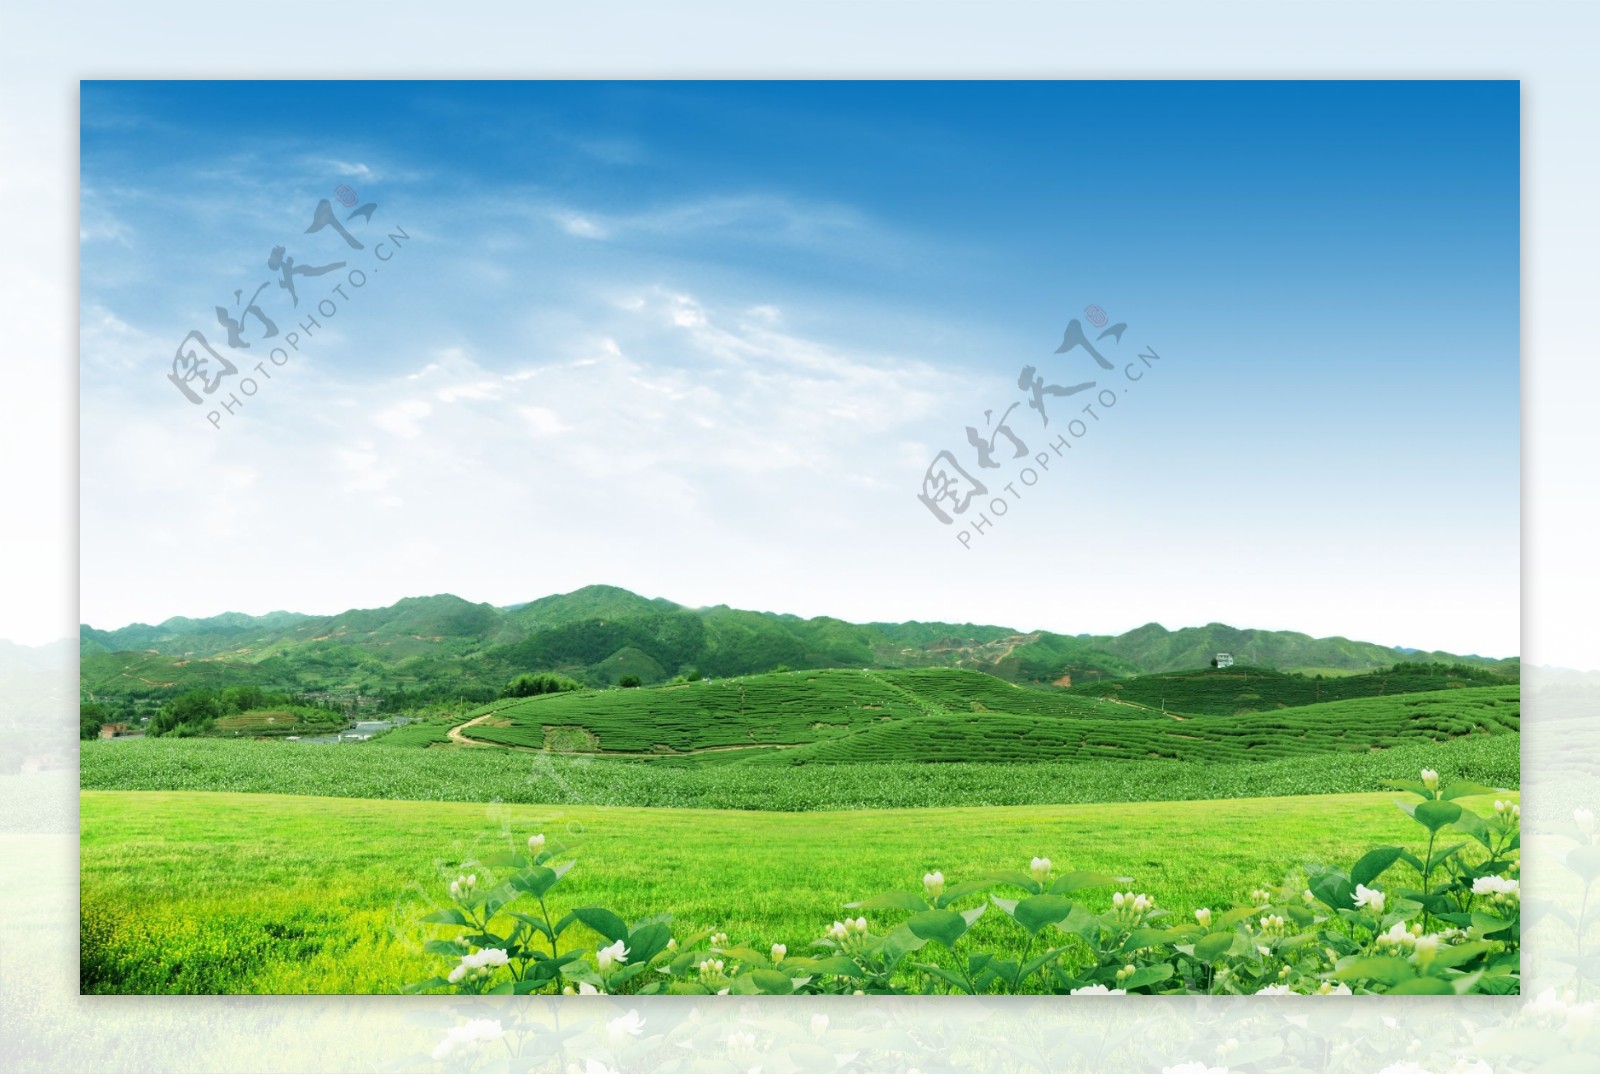 绿色山坡茶园美景图片